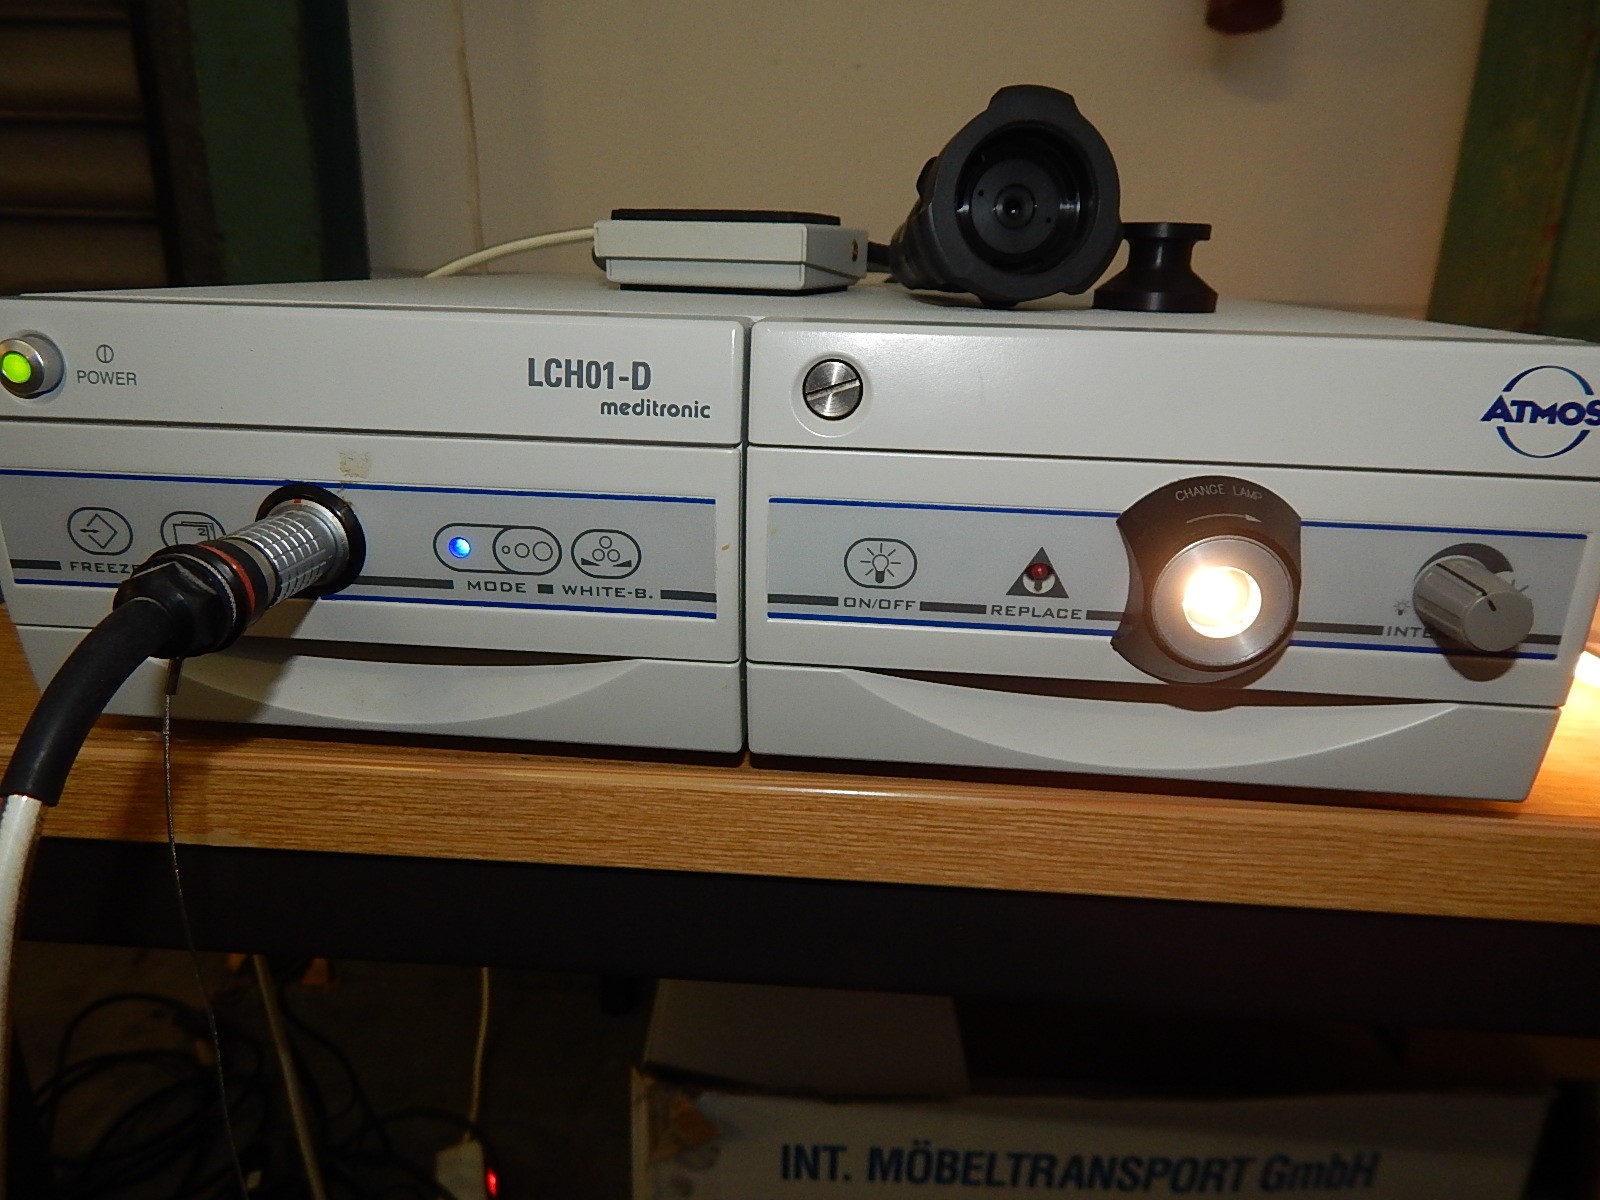 atmos-meditronic-lch01-d-ccd-farbkamera-prozessor-lichtquelle-461